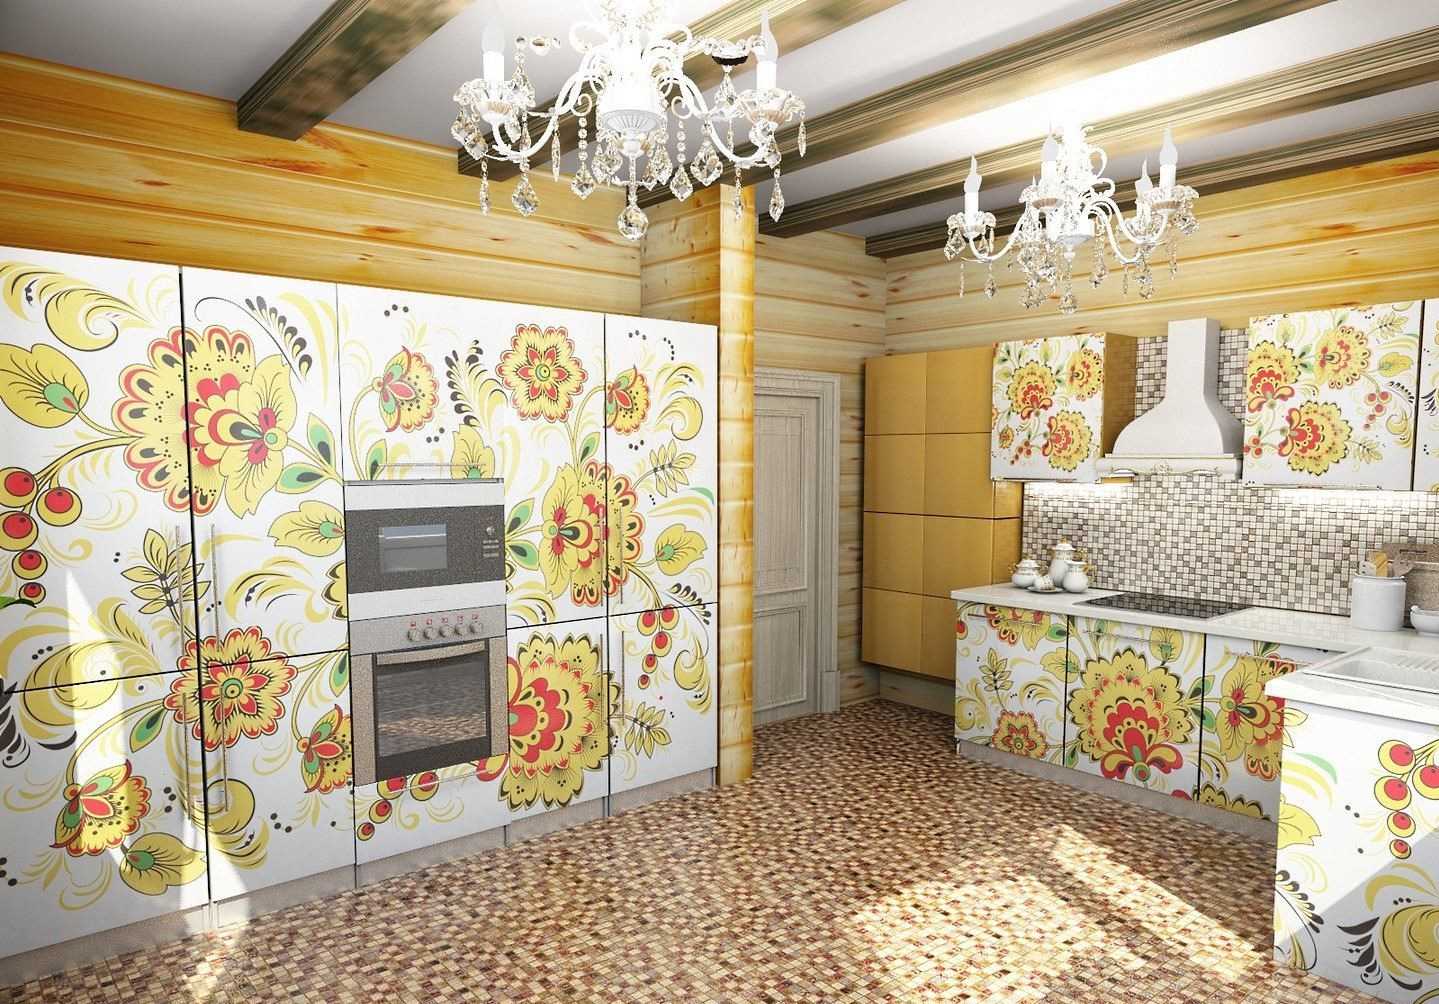 Příklad použití ruského stylu ve světlých dekorech bytu